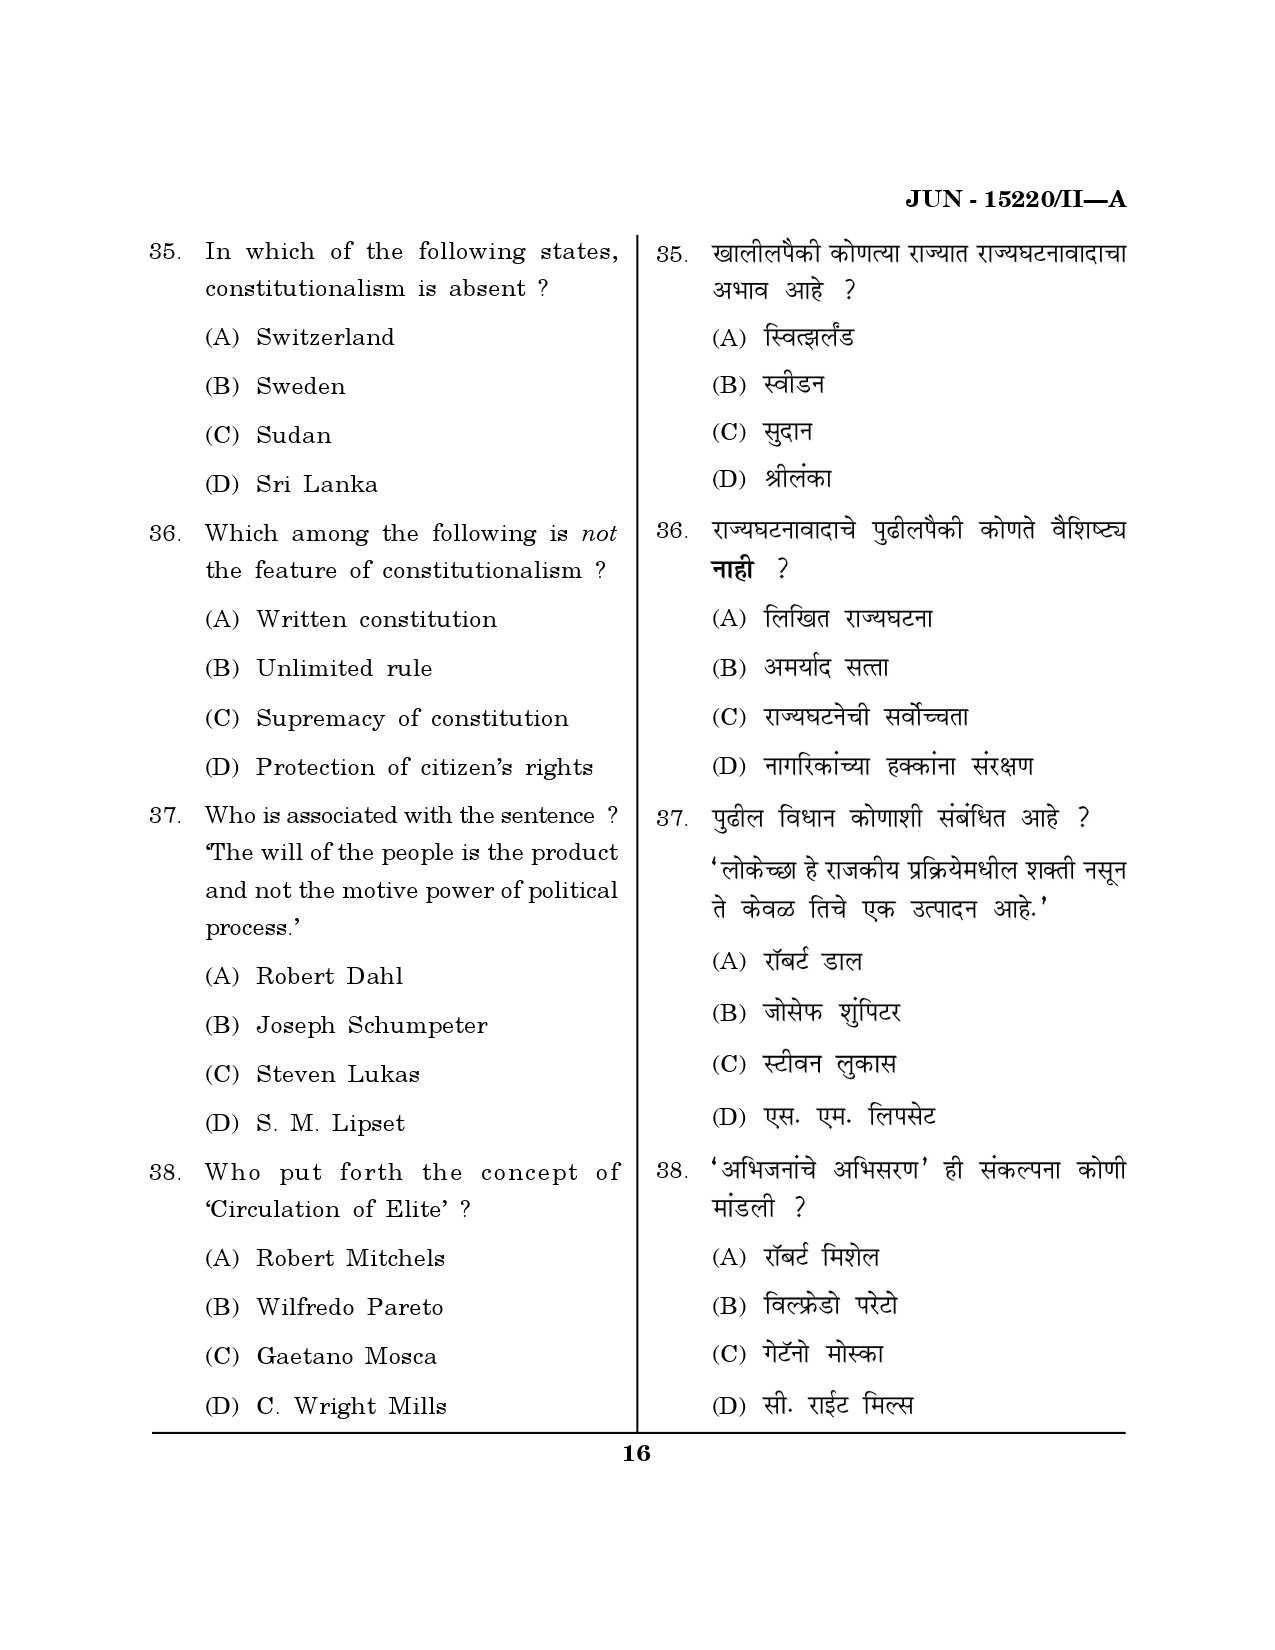 Maharashtra SET Political Science Question Paper II June 2020 15